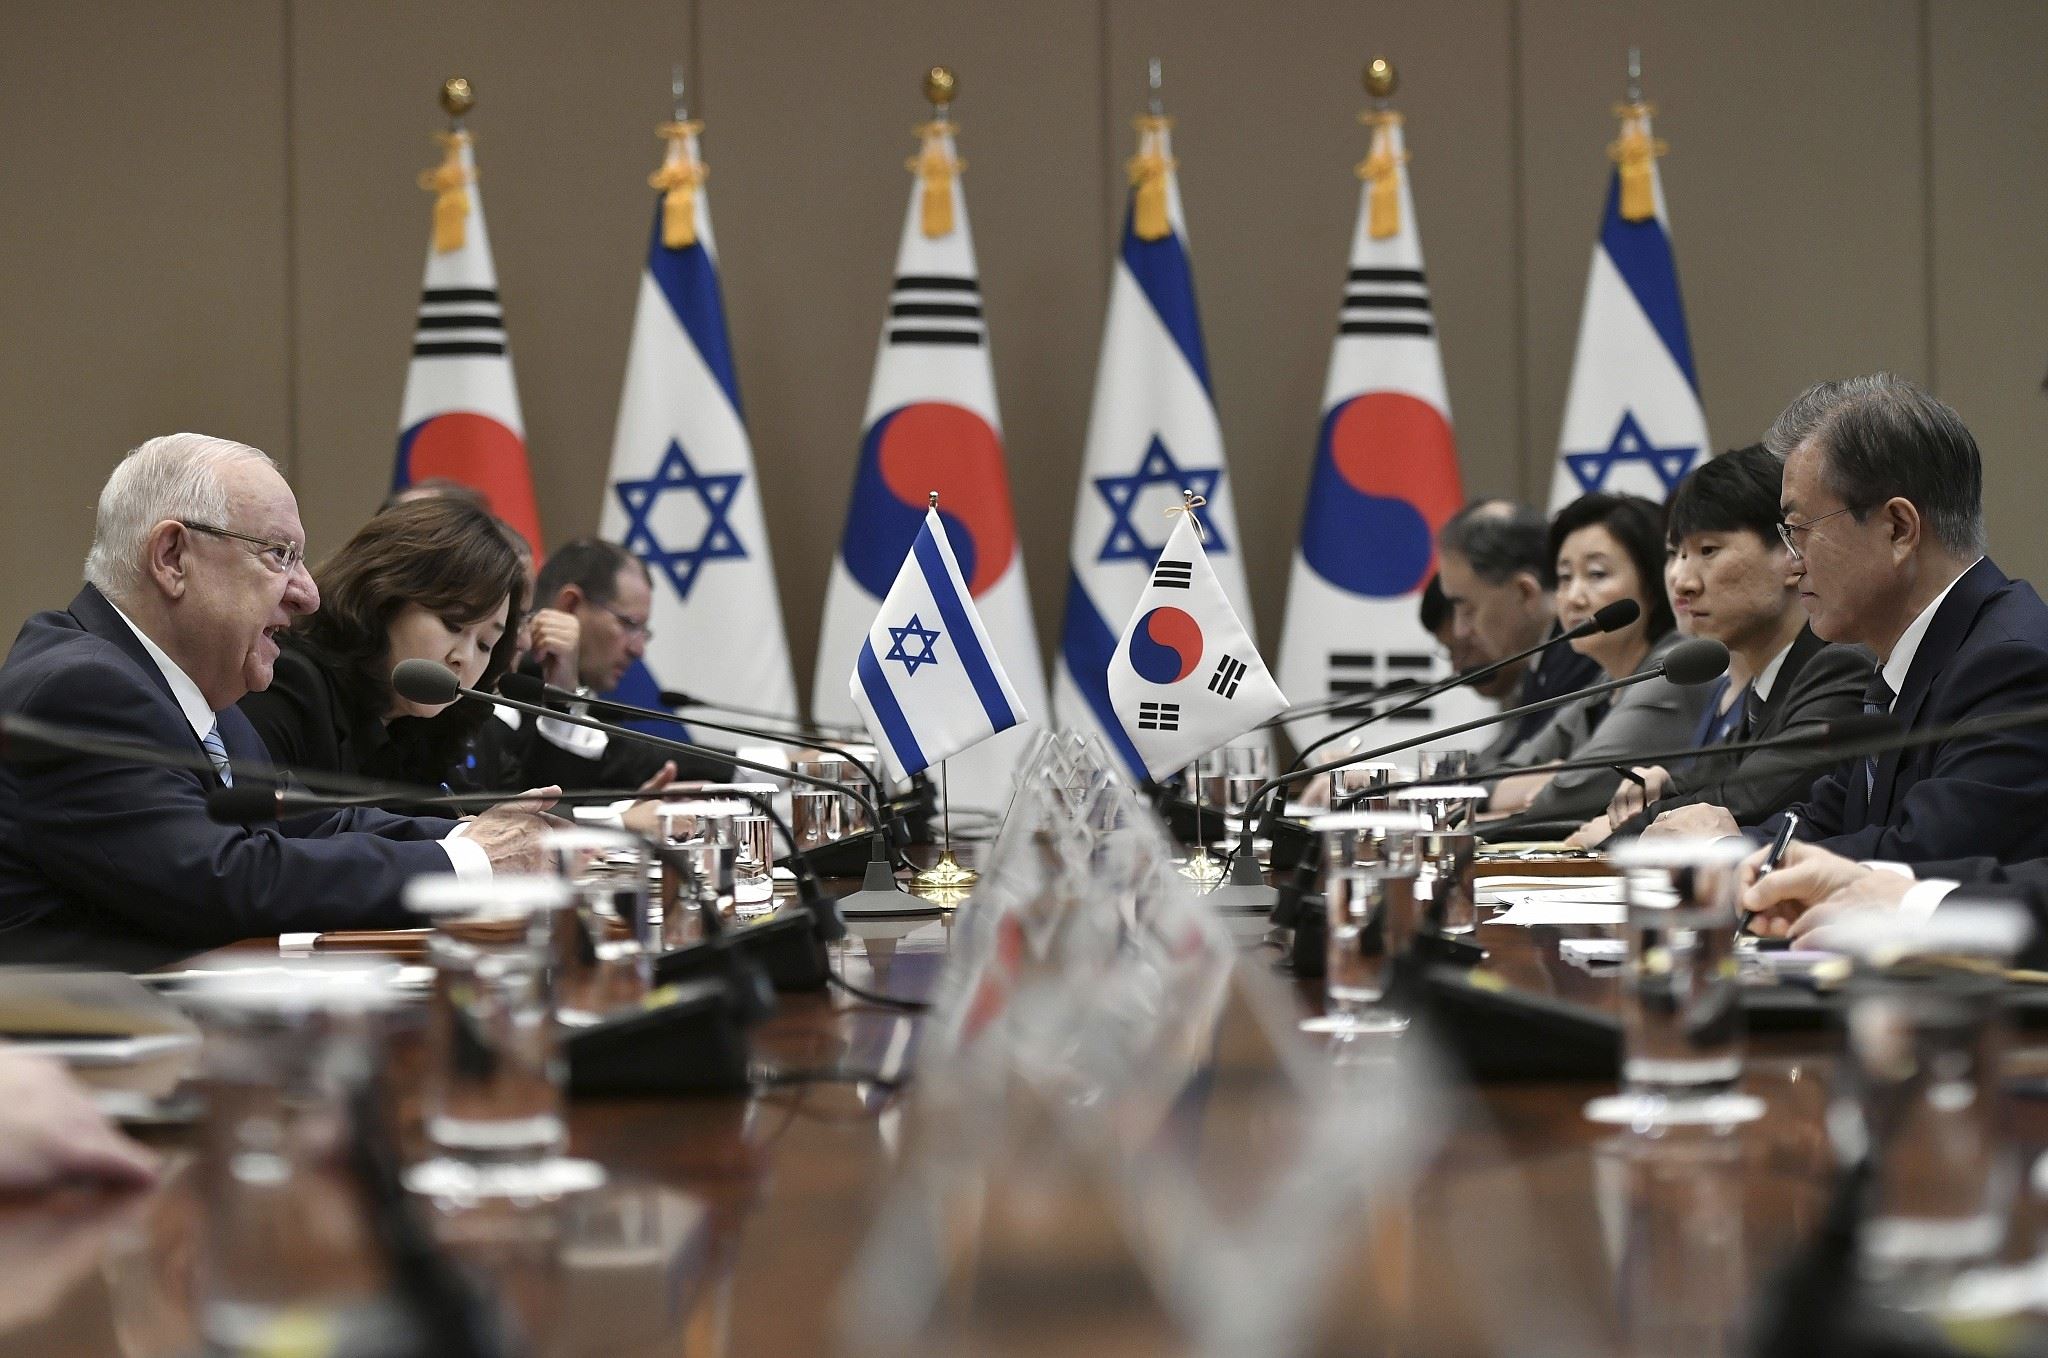 بوادر أزمة بين اسرائيل وكوريا الجنوبية بسبب صفقة أسلحة مع طرف ثالث